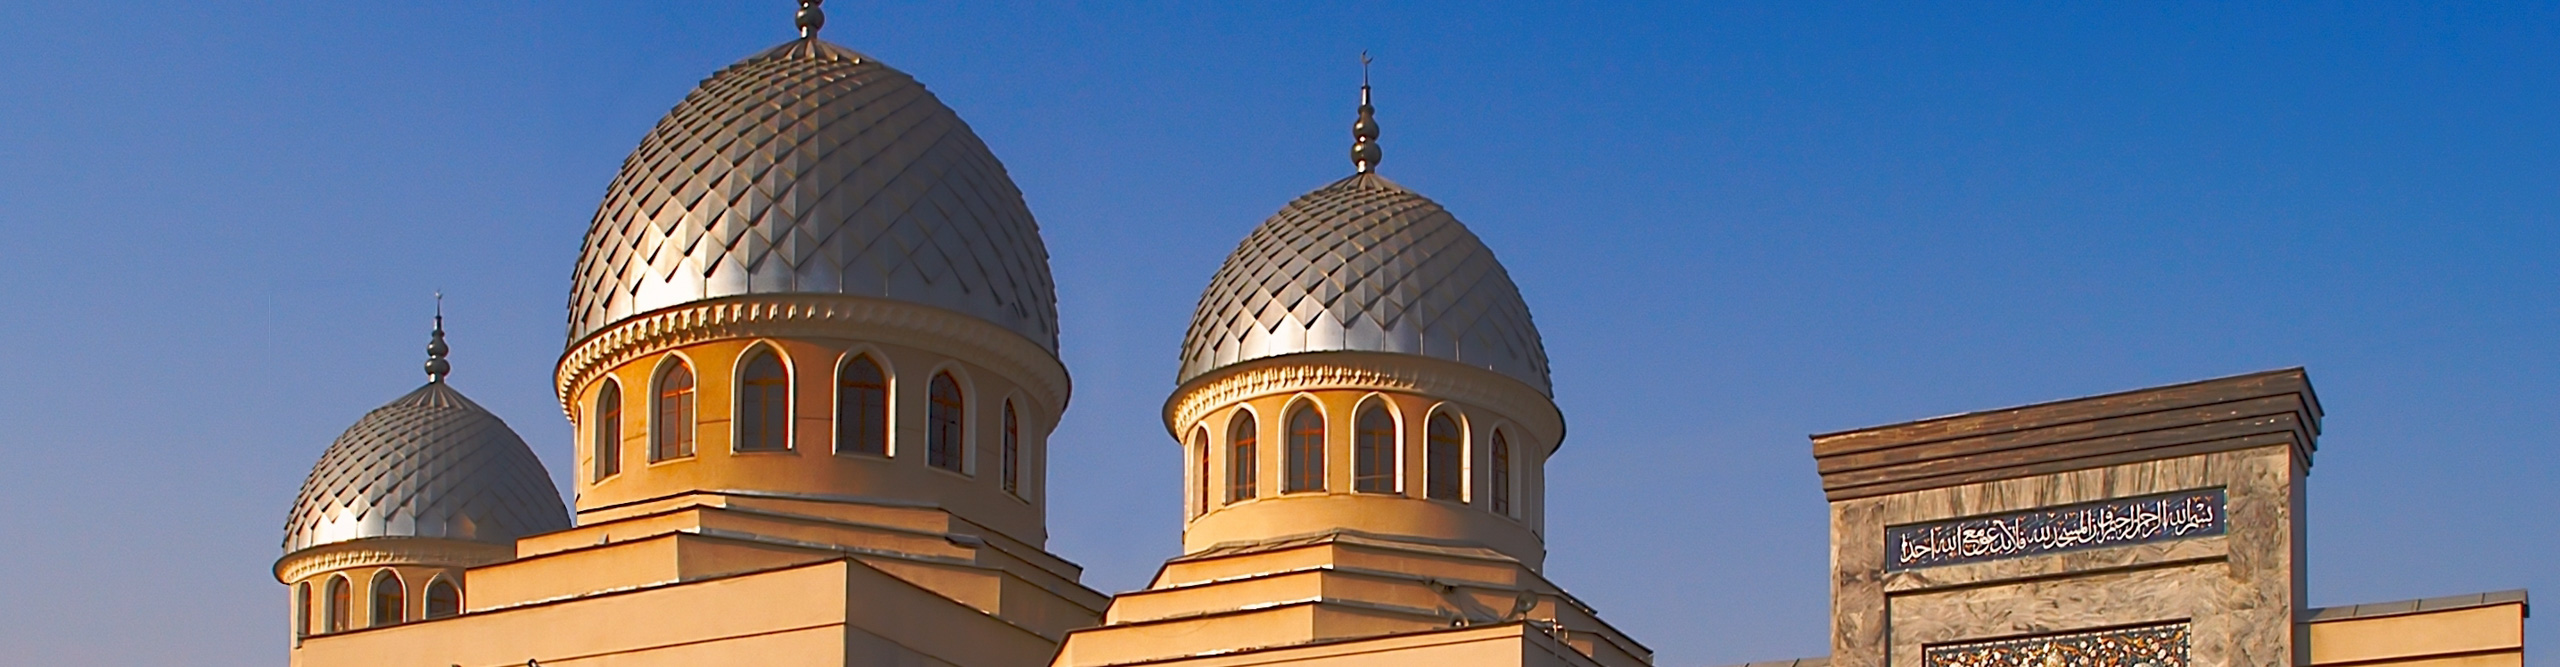 Mosque in Tashkent, Uzbekistan